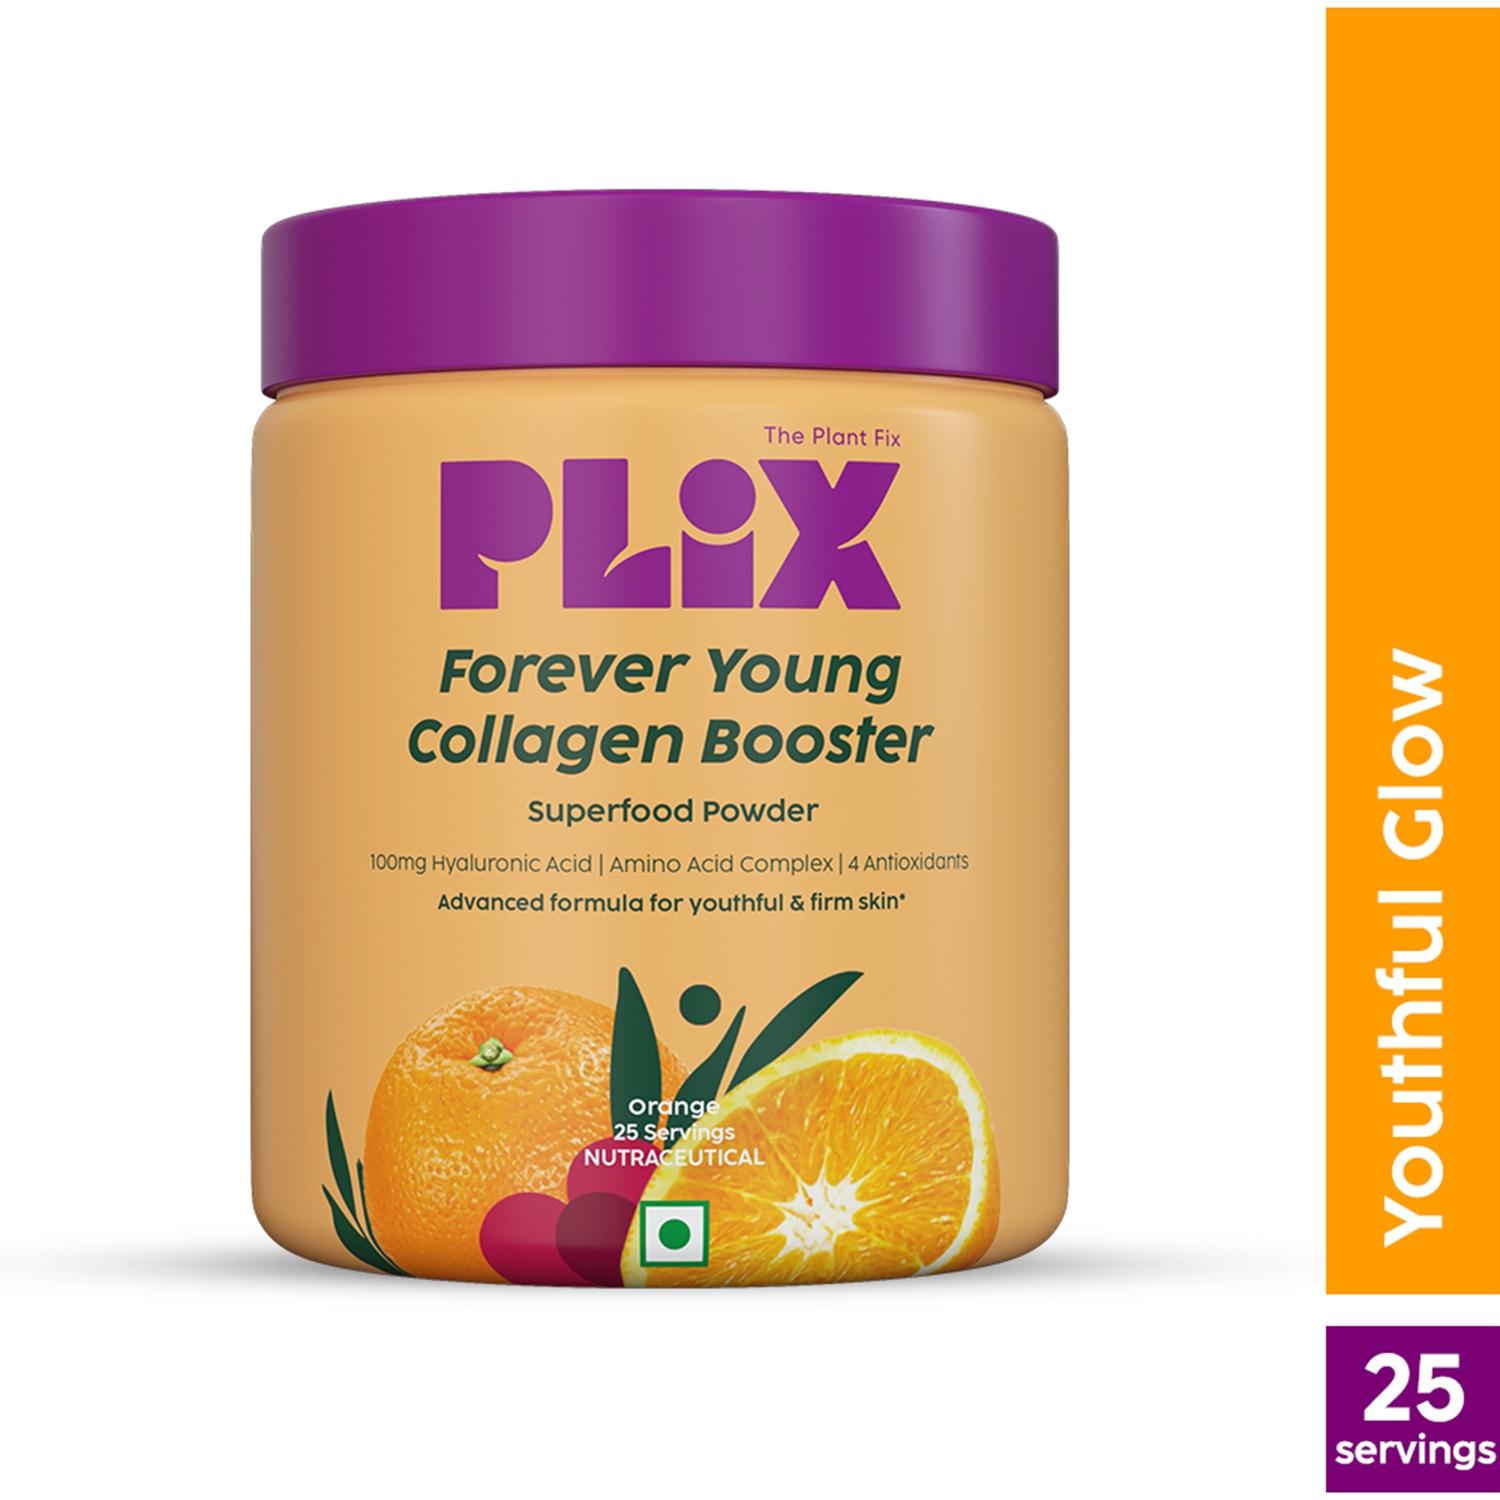 Plix The Plant Fix | Plix The Plant Fix Forever Young Collagen Collagen Booster Supplement Powder Orange Flavour (200g)